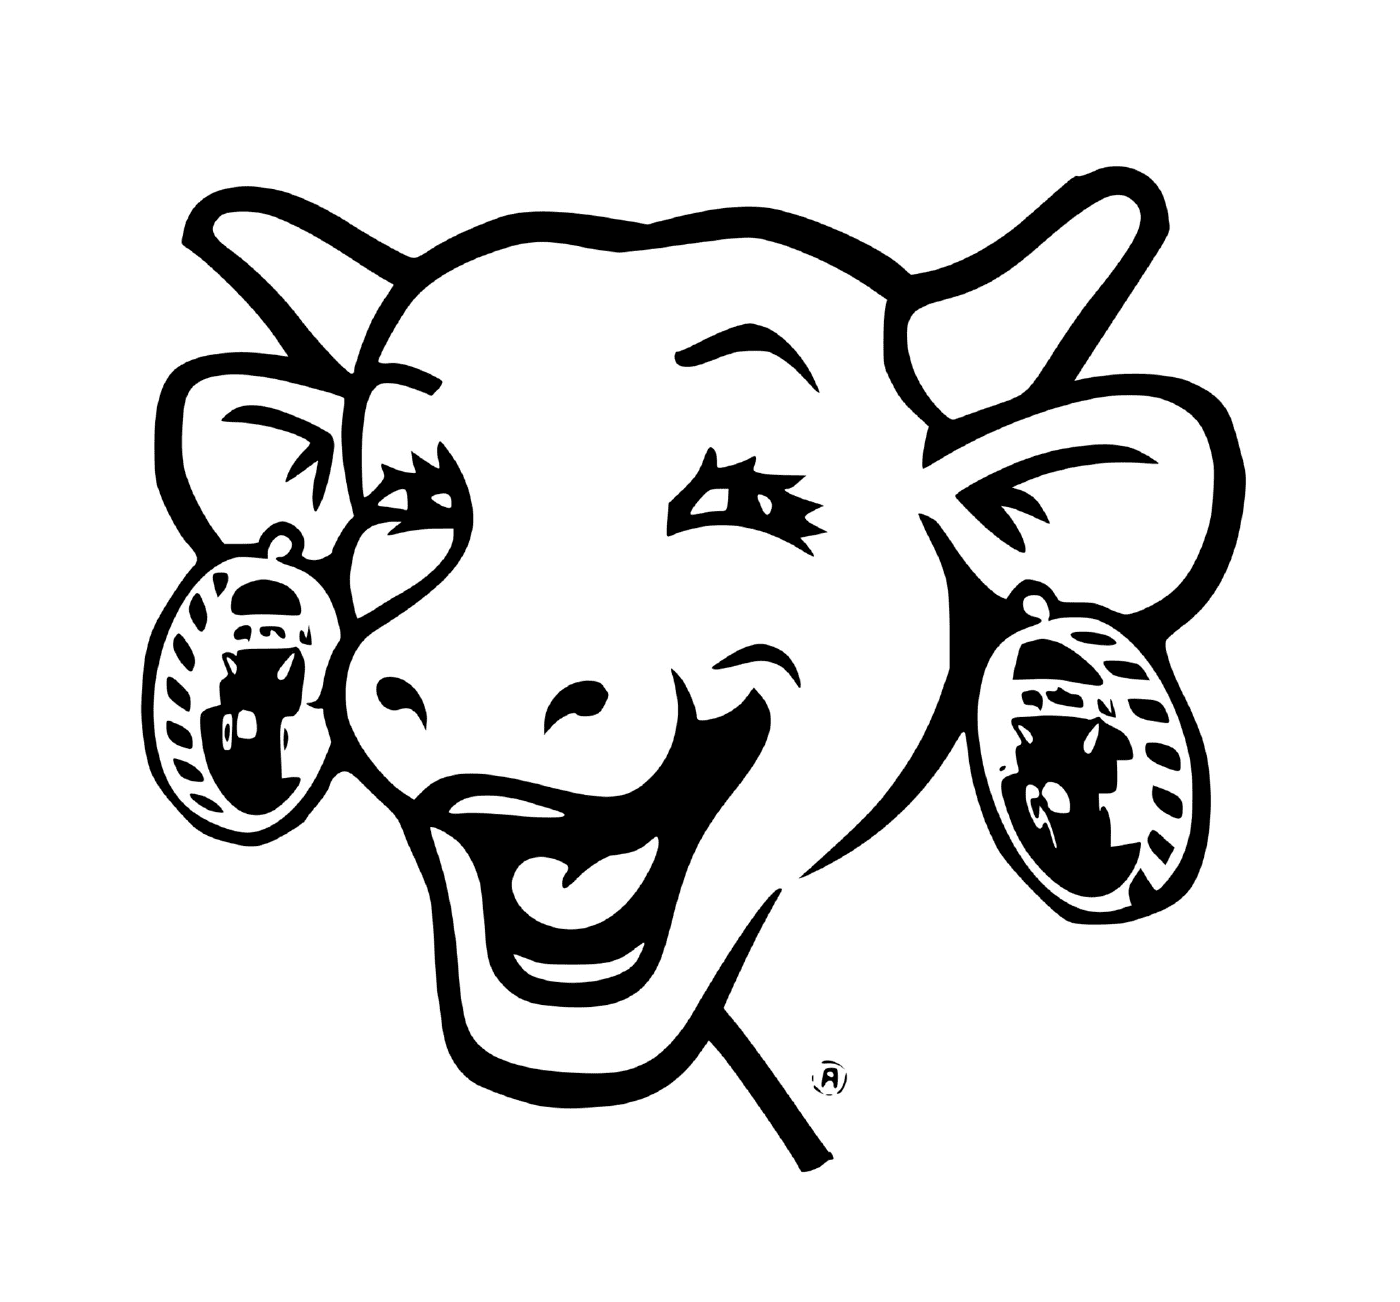  La mucca ridente 